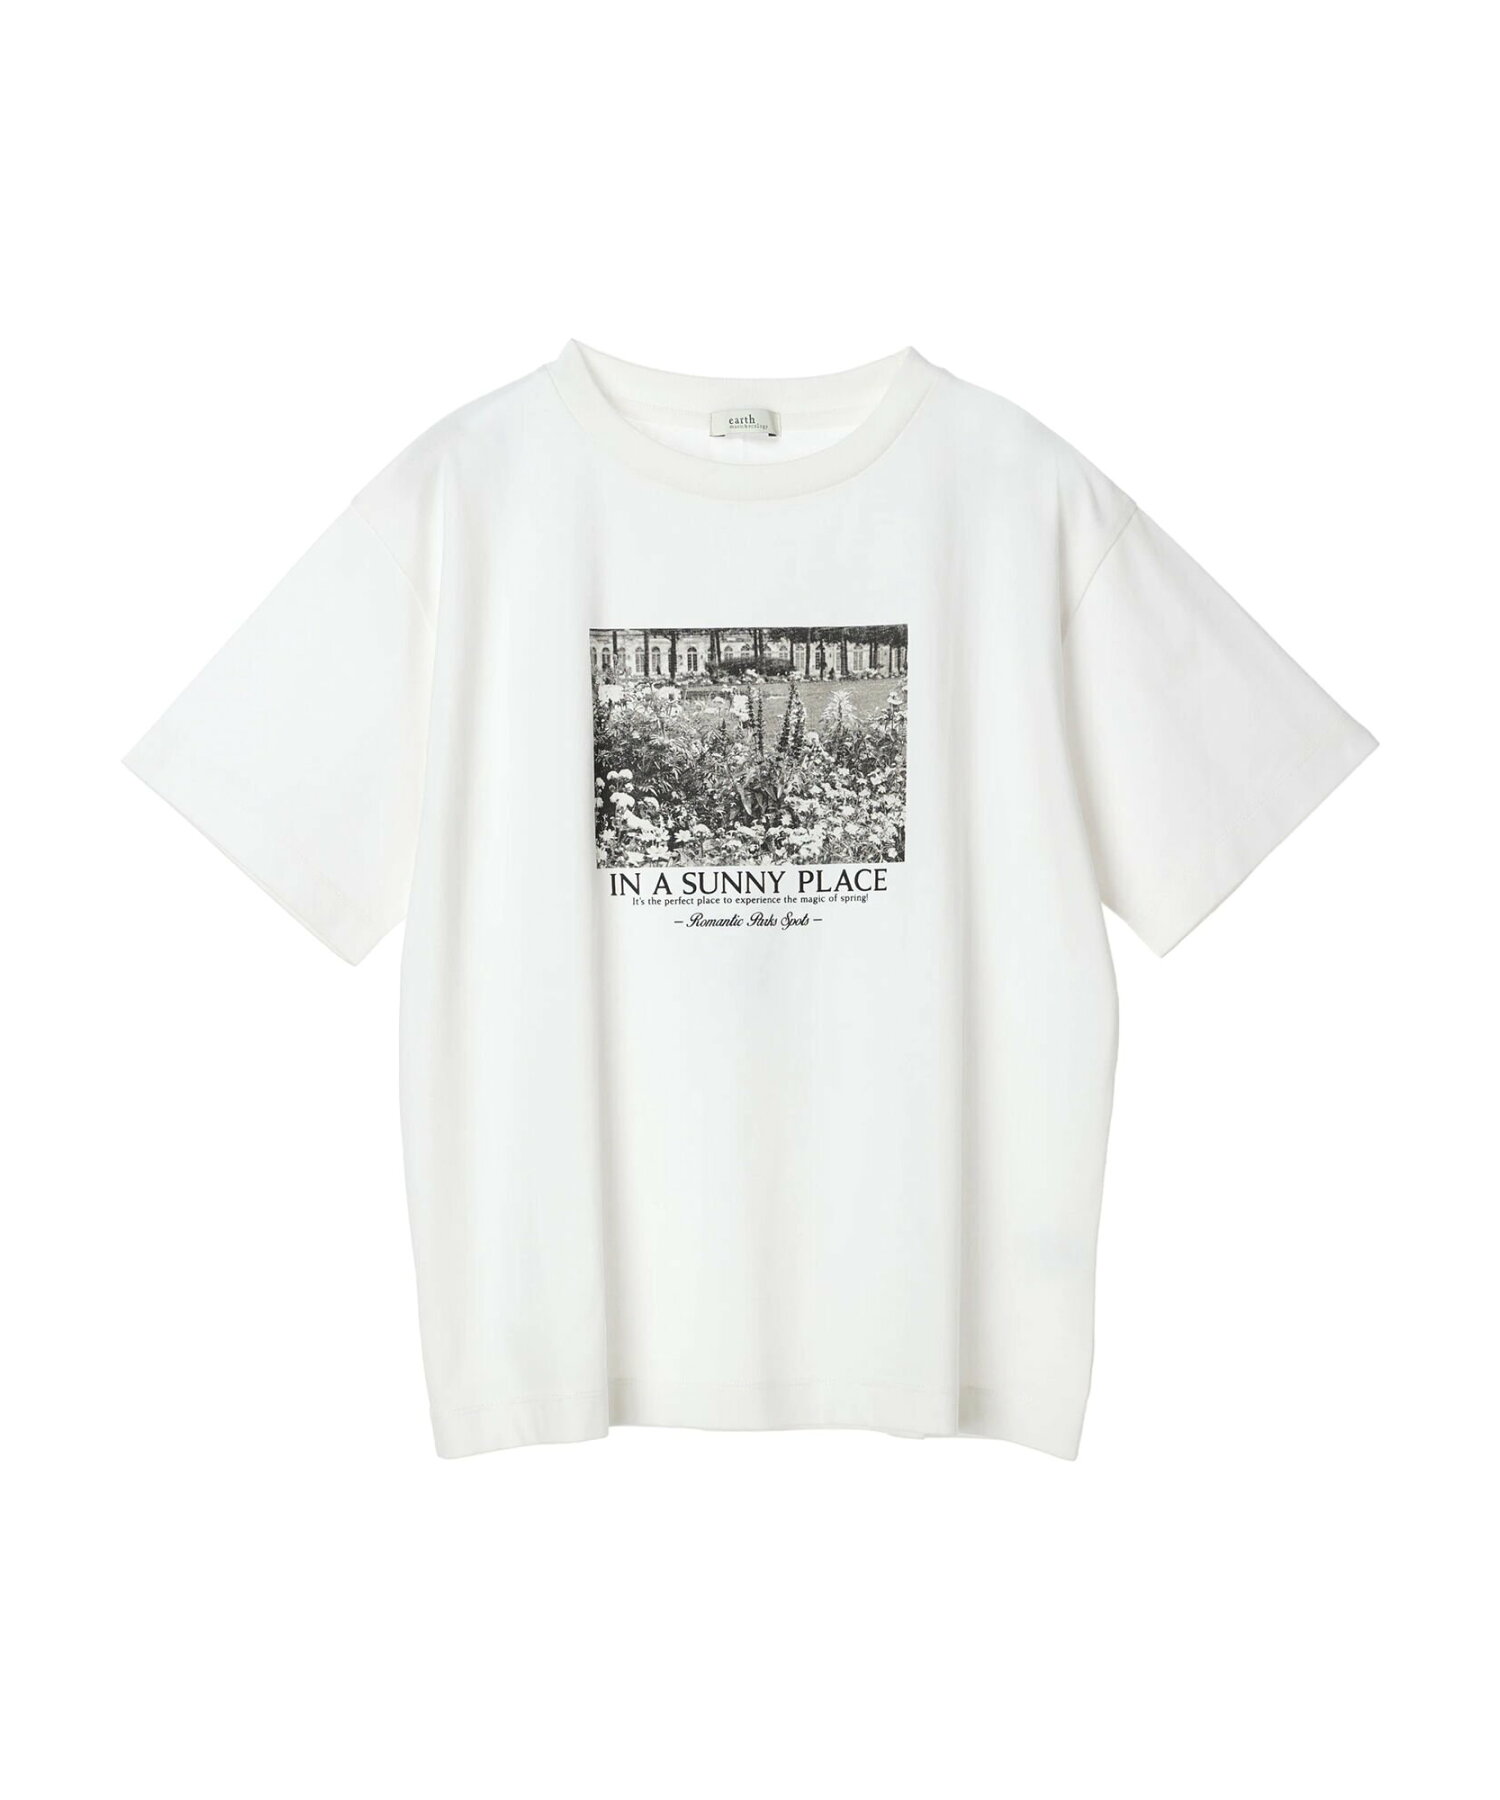 アソートグラフィックレギュラーT Tシャツ/半袖/レディース/24SS